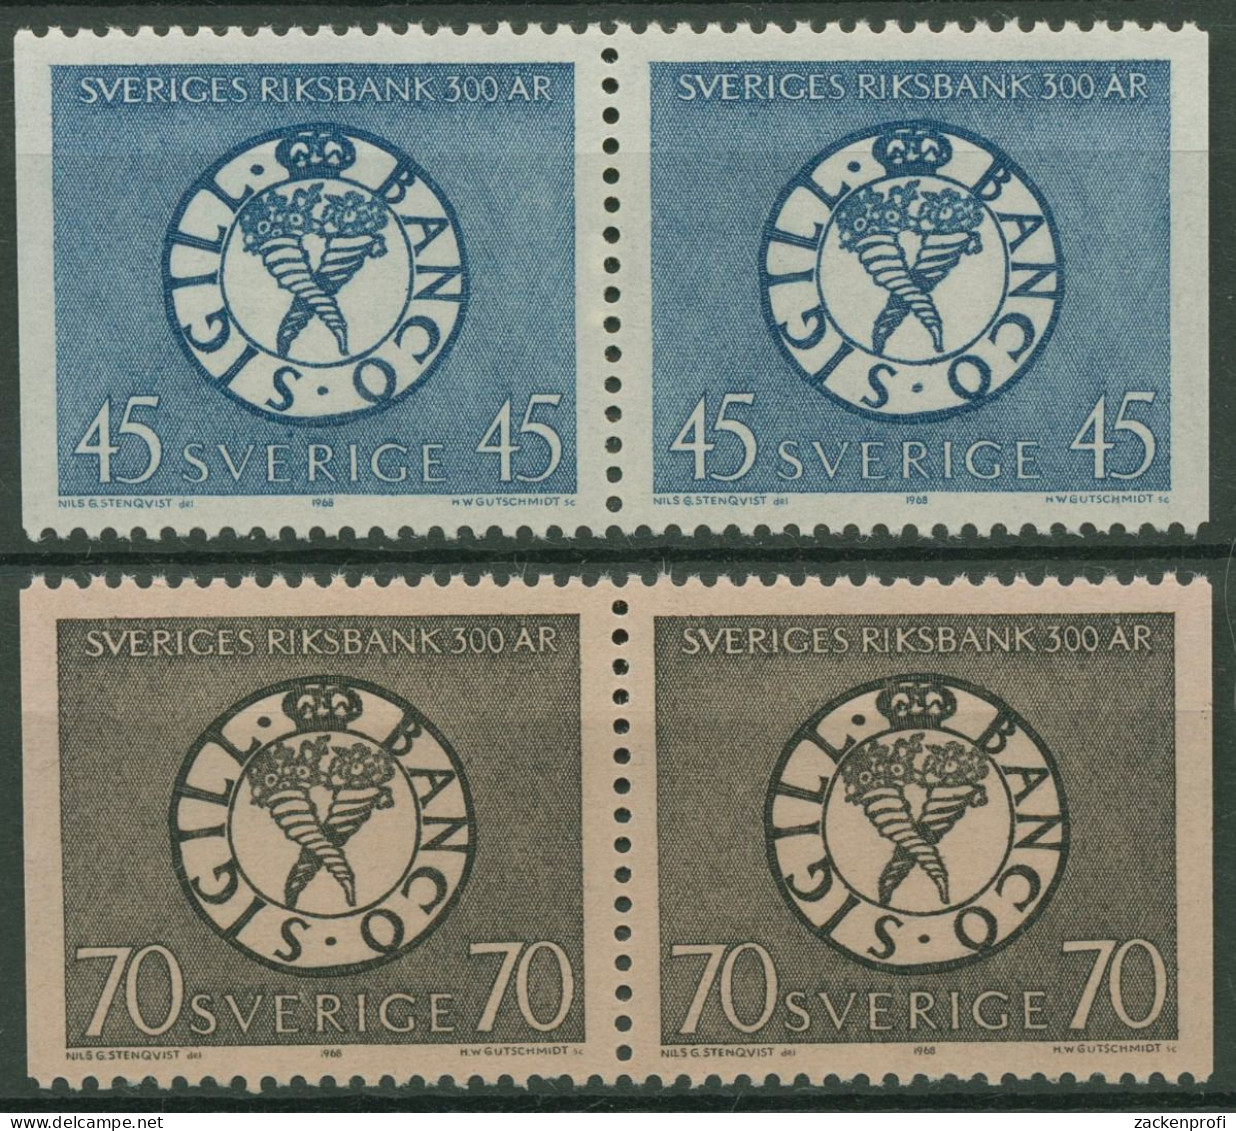 Schweden 1968 Schwedische Reichsbank Siegel 603/04 Dl/Dr Paare Postfrisch - Ongebruikt